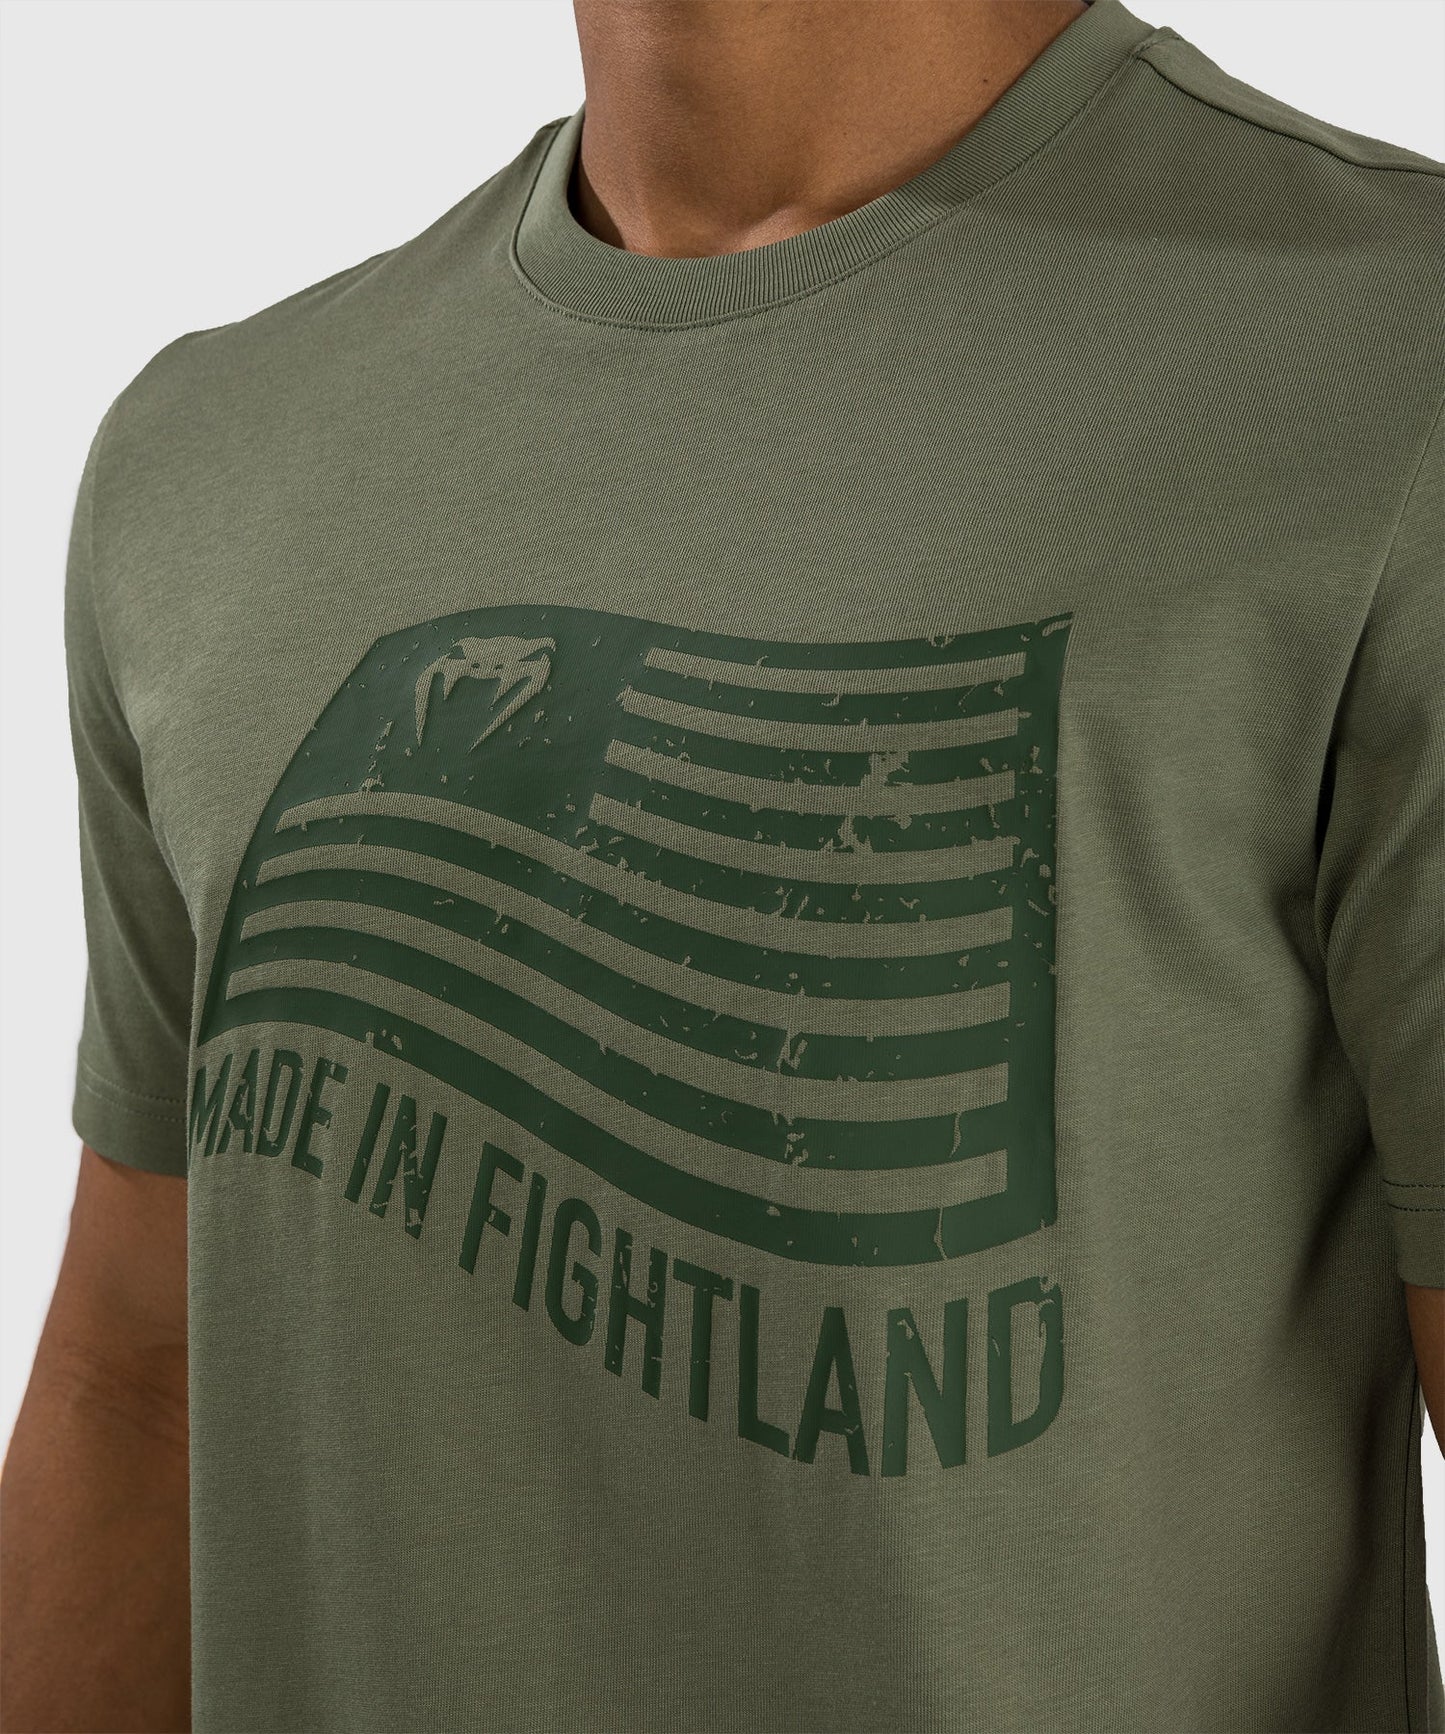 Venum Made in Fightland T-Shirt - Khaki